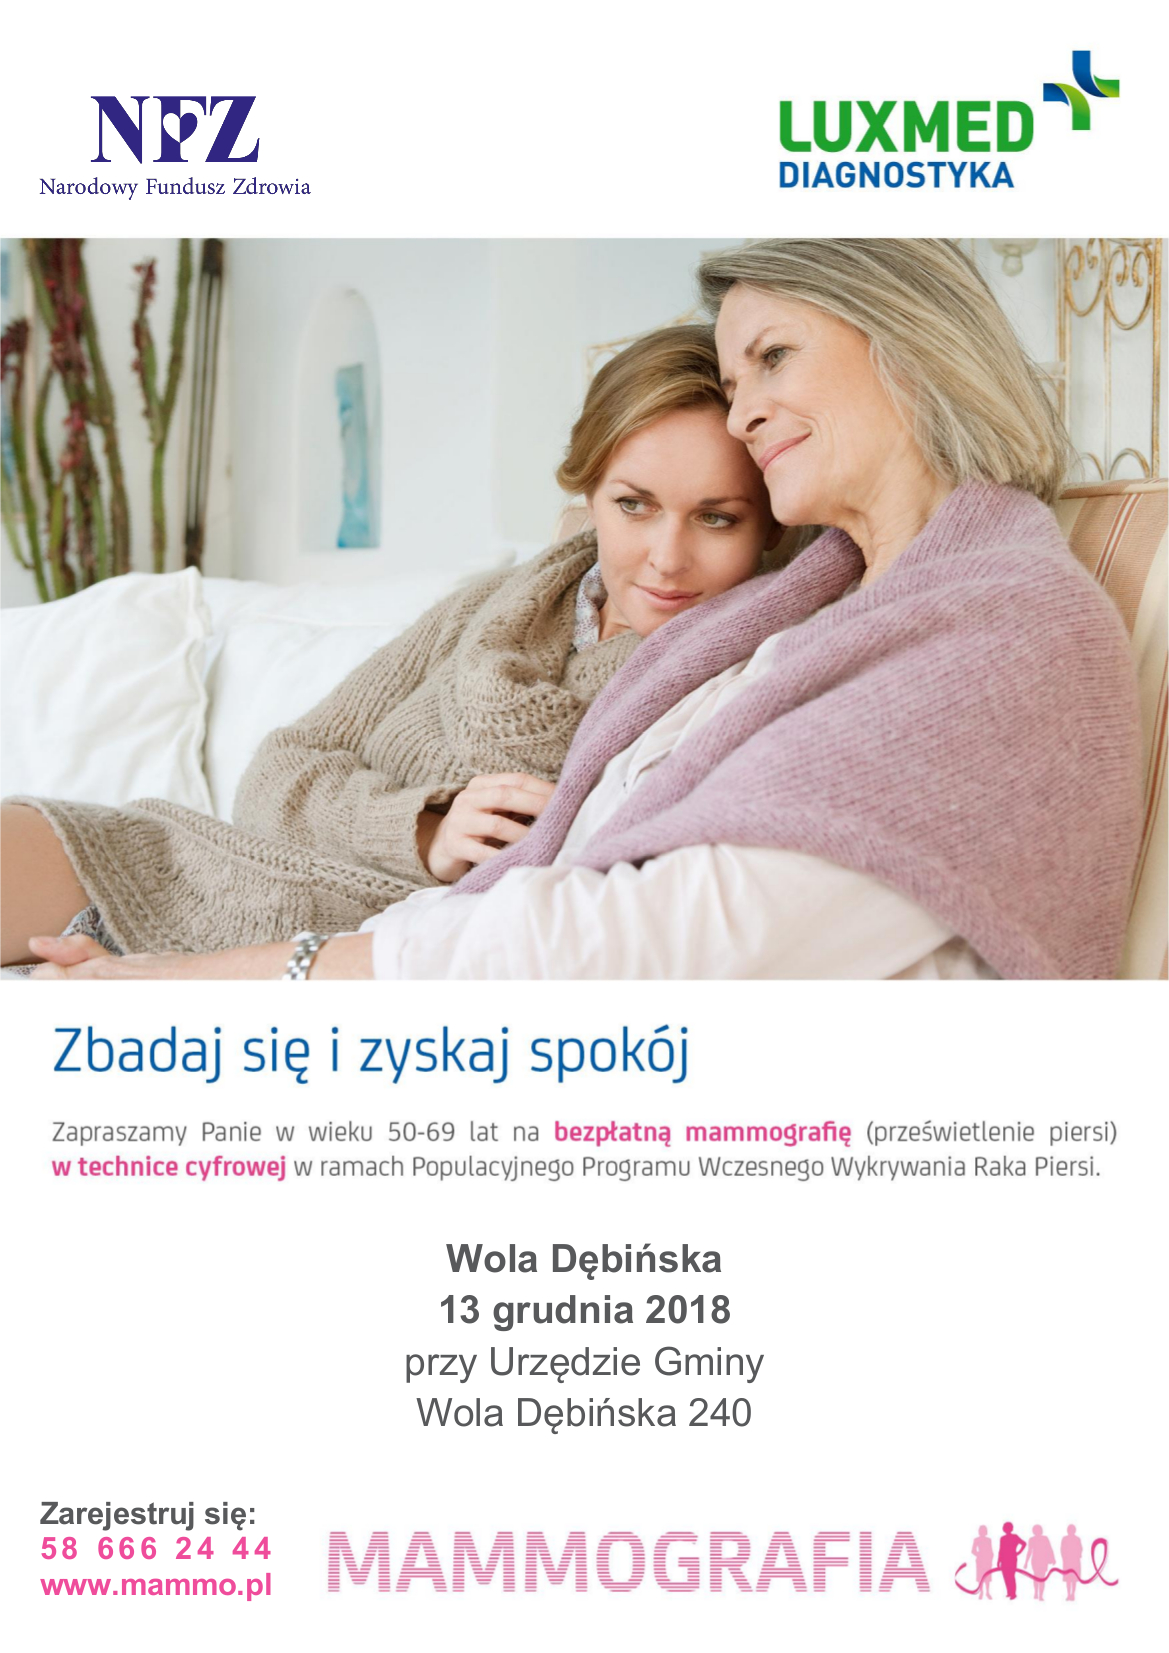 plakat promujący bezpłatną mammografię